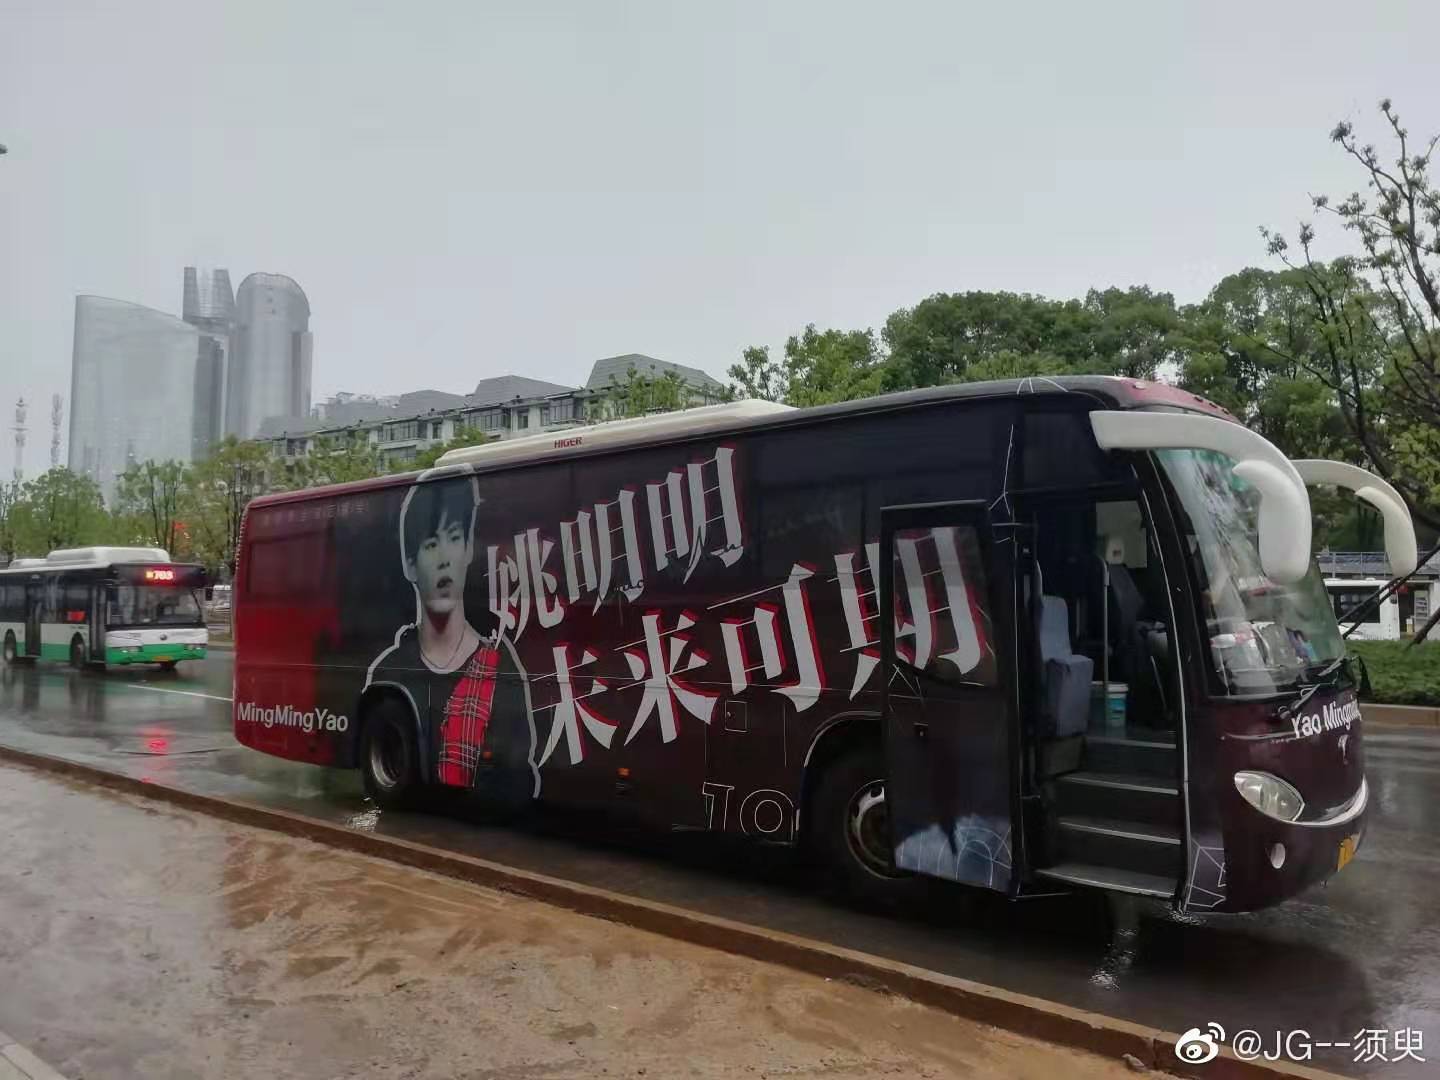 上海大巴车身广告制作|上海巴士车体广告制作安装|上海物流车货车广告喷绘